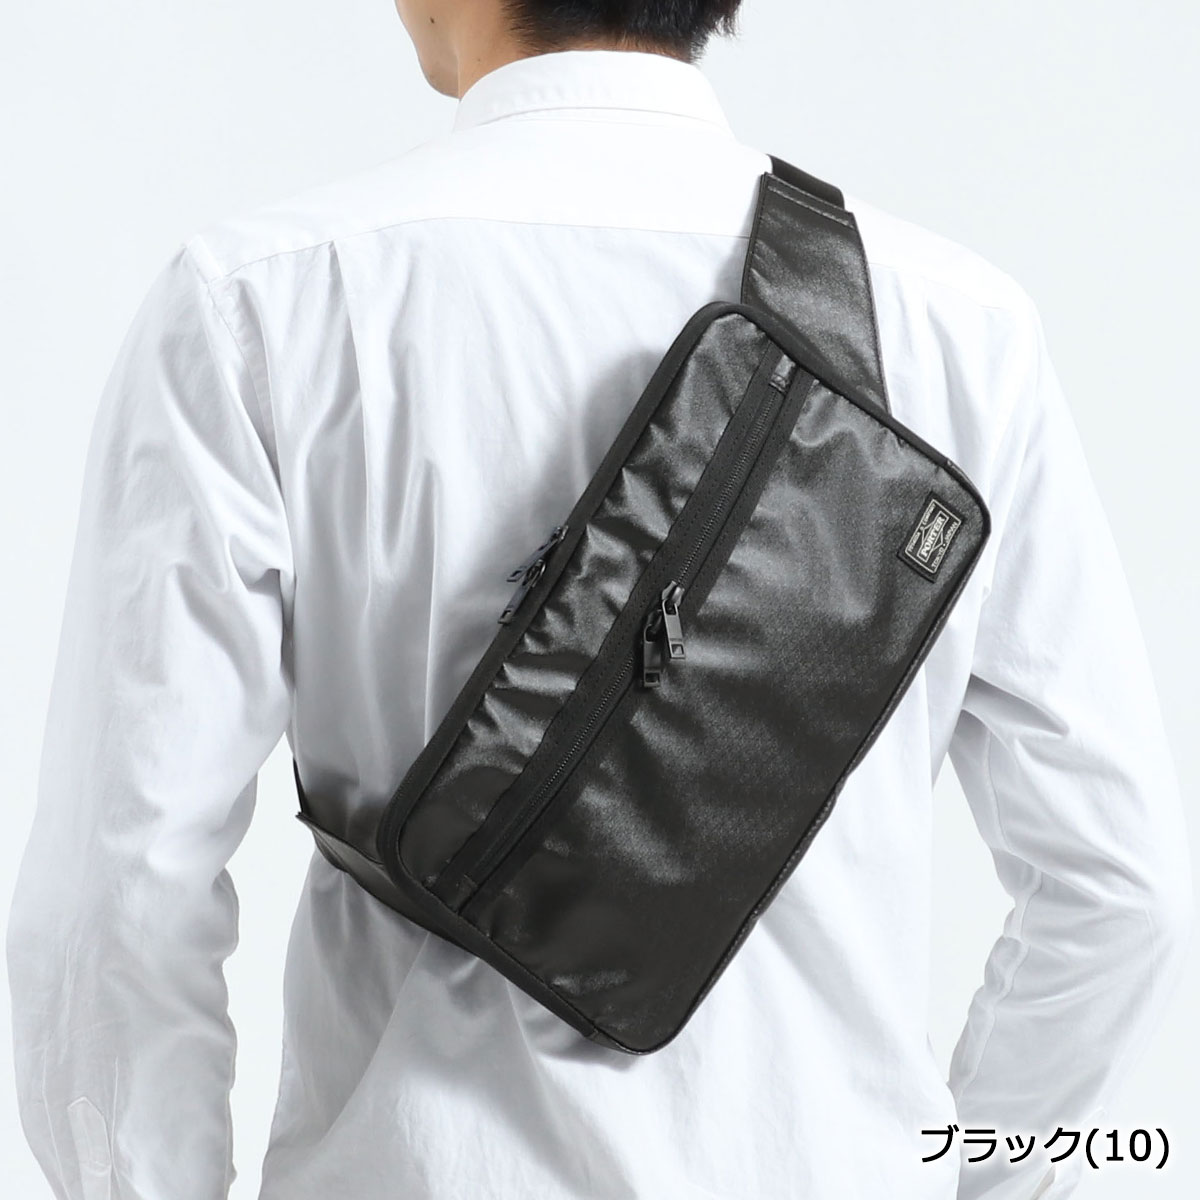 楽天市場 ノベルティ付 無料ラッピング 吉田カバン ポーター ウエストバッグ Porter Tactical タクティカル 斜めがけ ボディバッグ Waist Bag ショルダー メンズ レディース 654 ギャレリア Bag Luggage